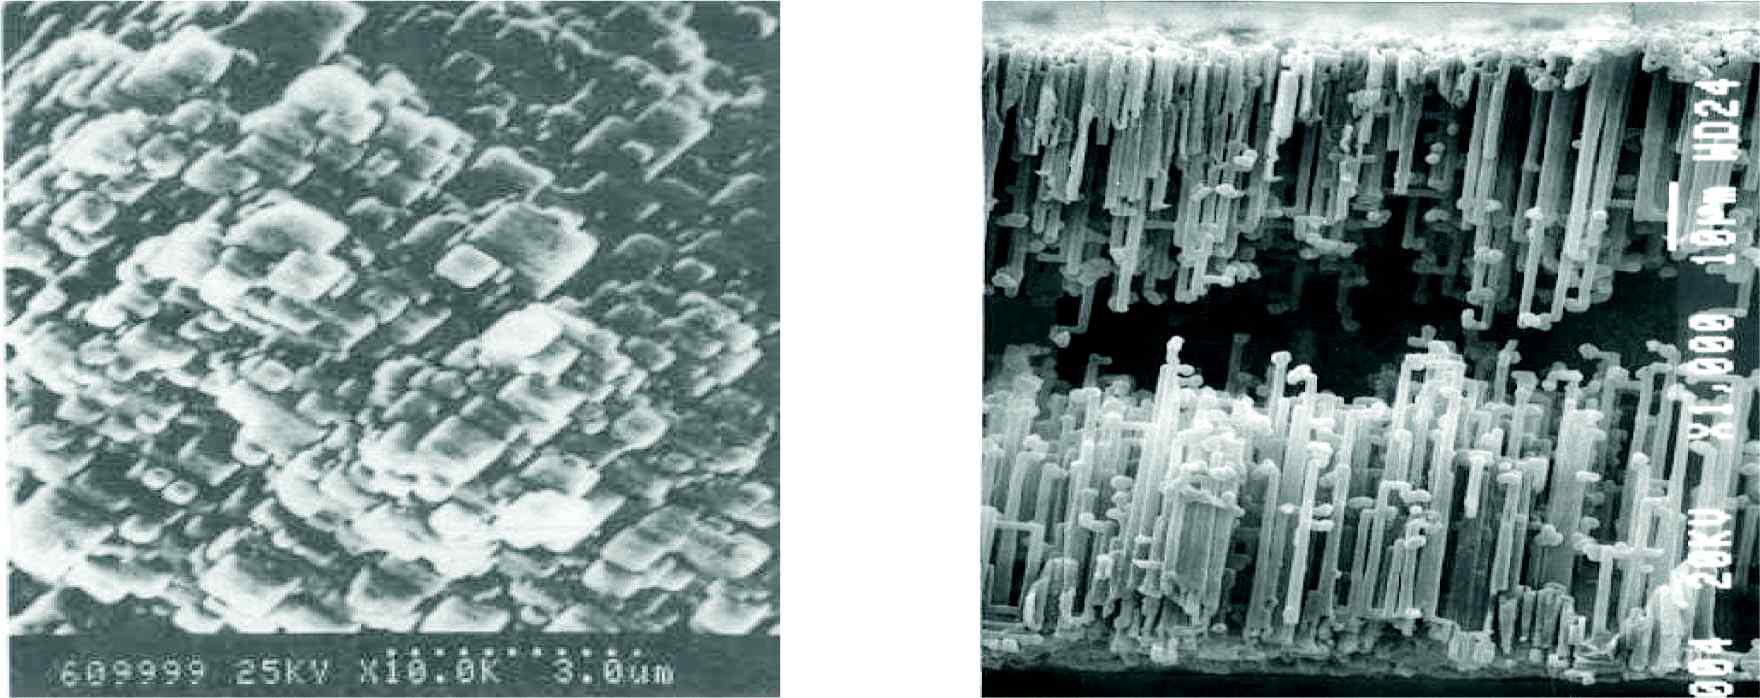 커패시터에 사용되는 알루미늄 에칭전극의 산화막 레플리카 사진